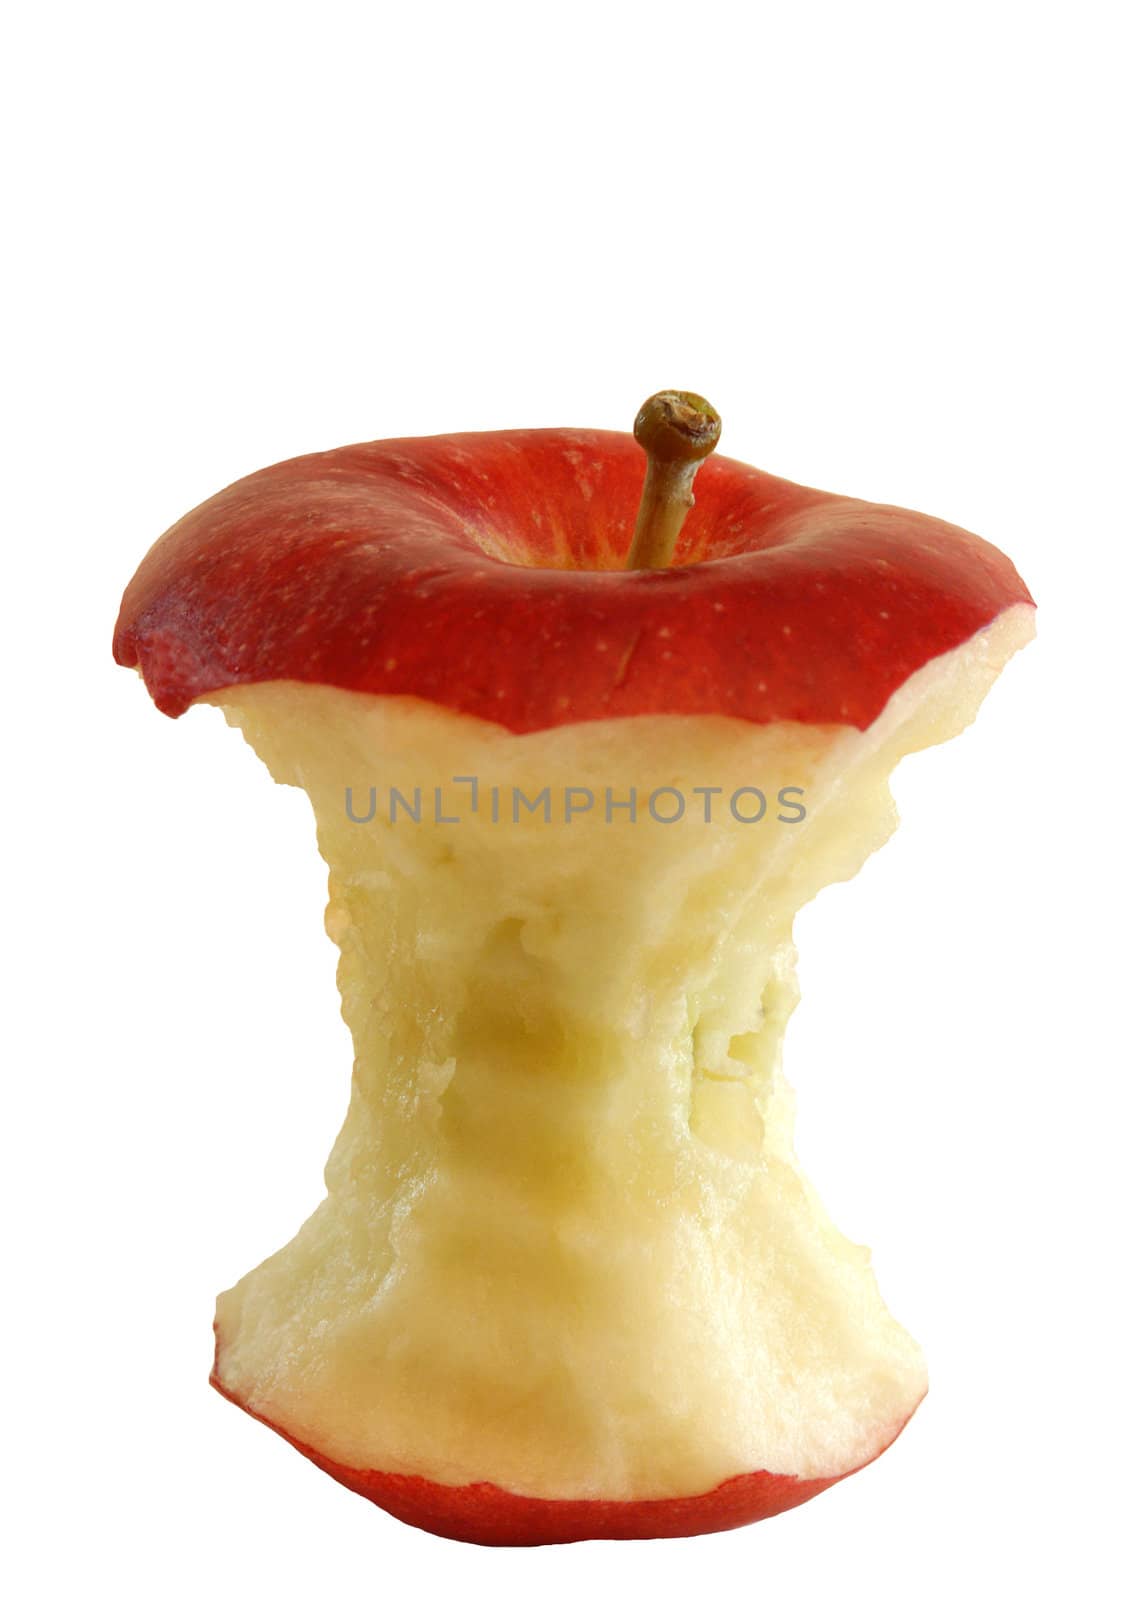 eaten apple core isolated on white